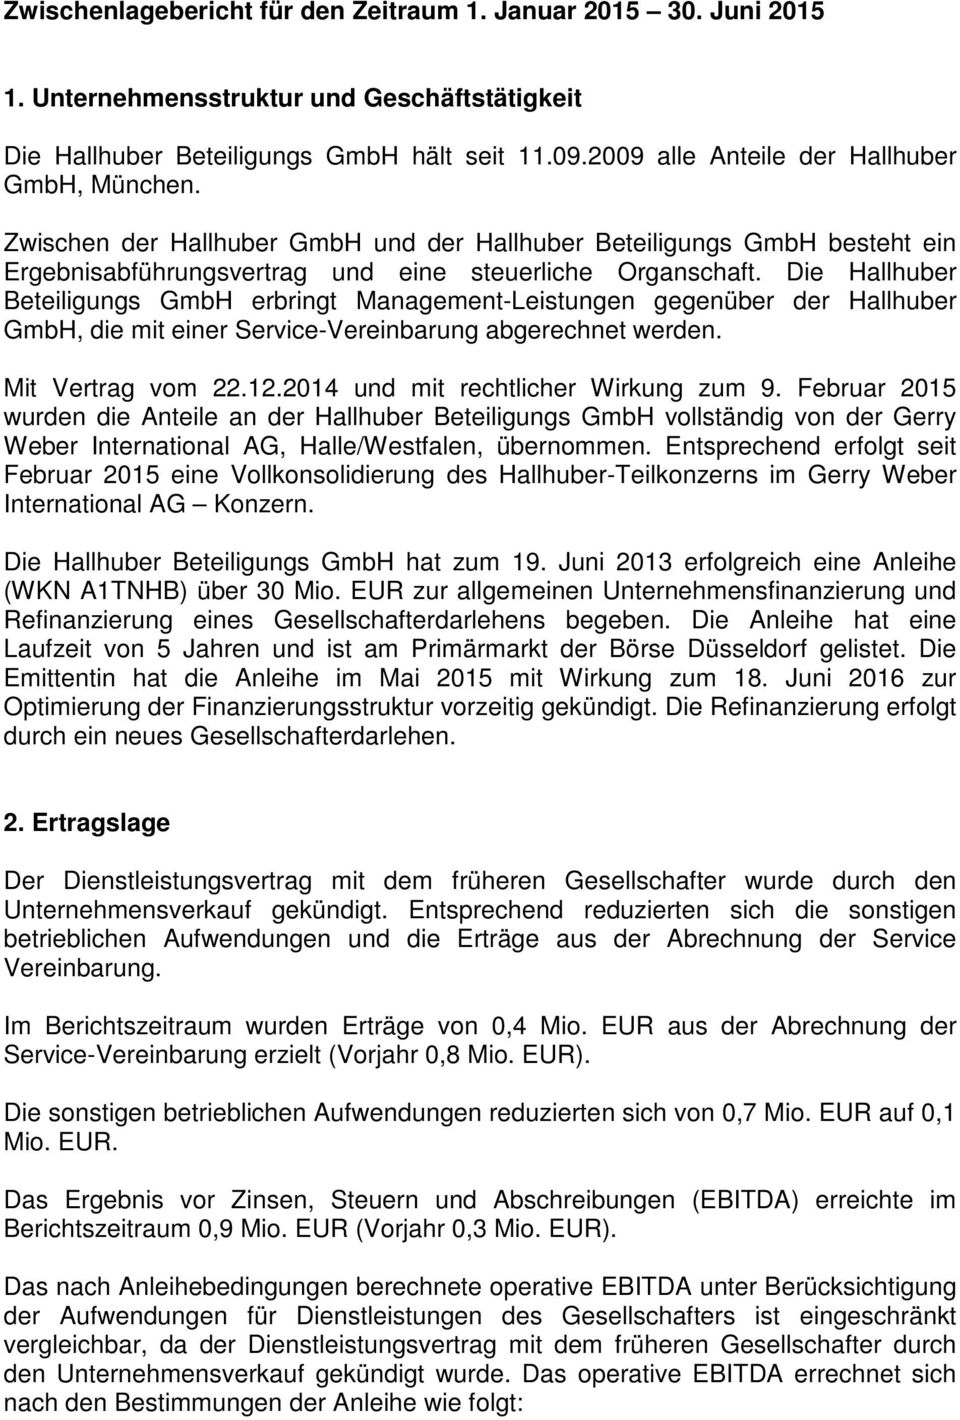 Die Hallhuber Beteiligungs GmbH erbringt Management-Leistungen gegenüber der Hallhuber GmbH, die mit einer Service-Vereinbarung abgerechnet werden. Mit Vertrag vom 22.12.